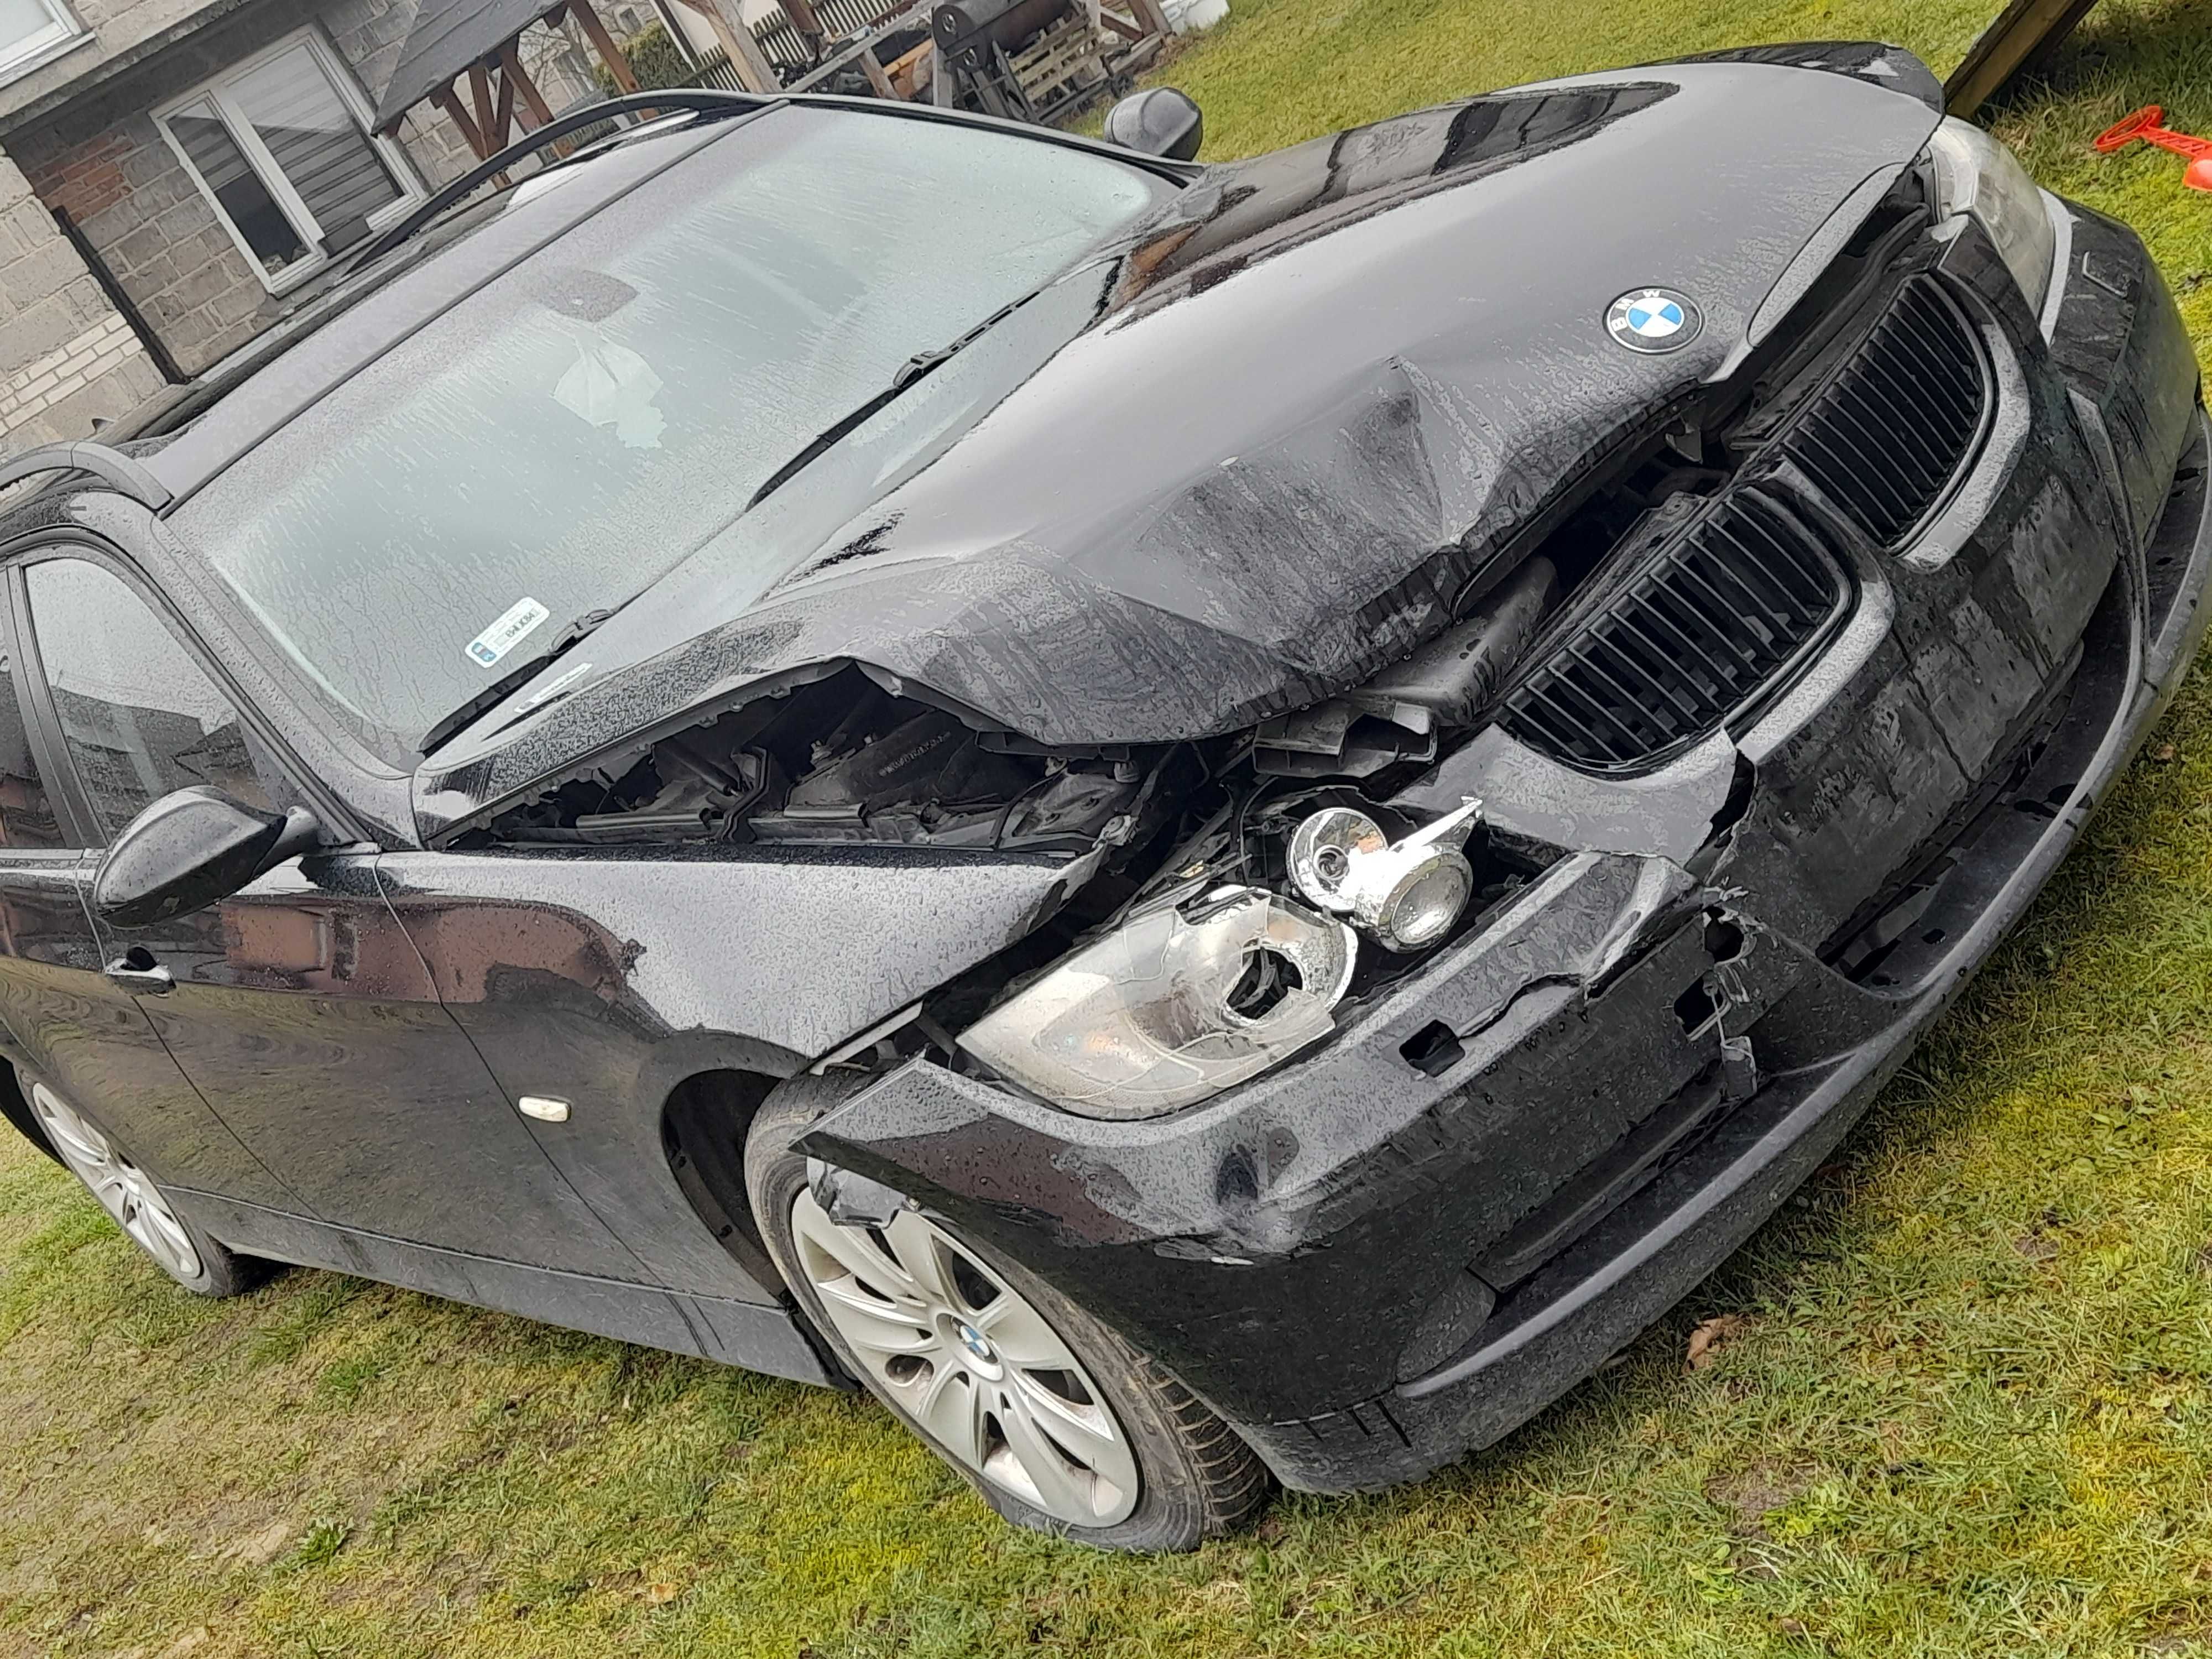 BMW serii 3, uszkodzone 2007 r.